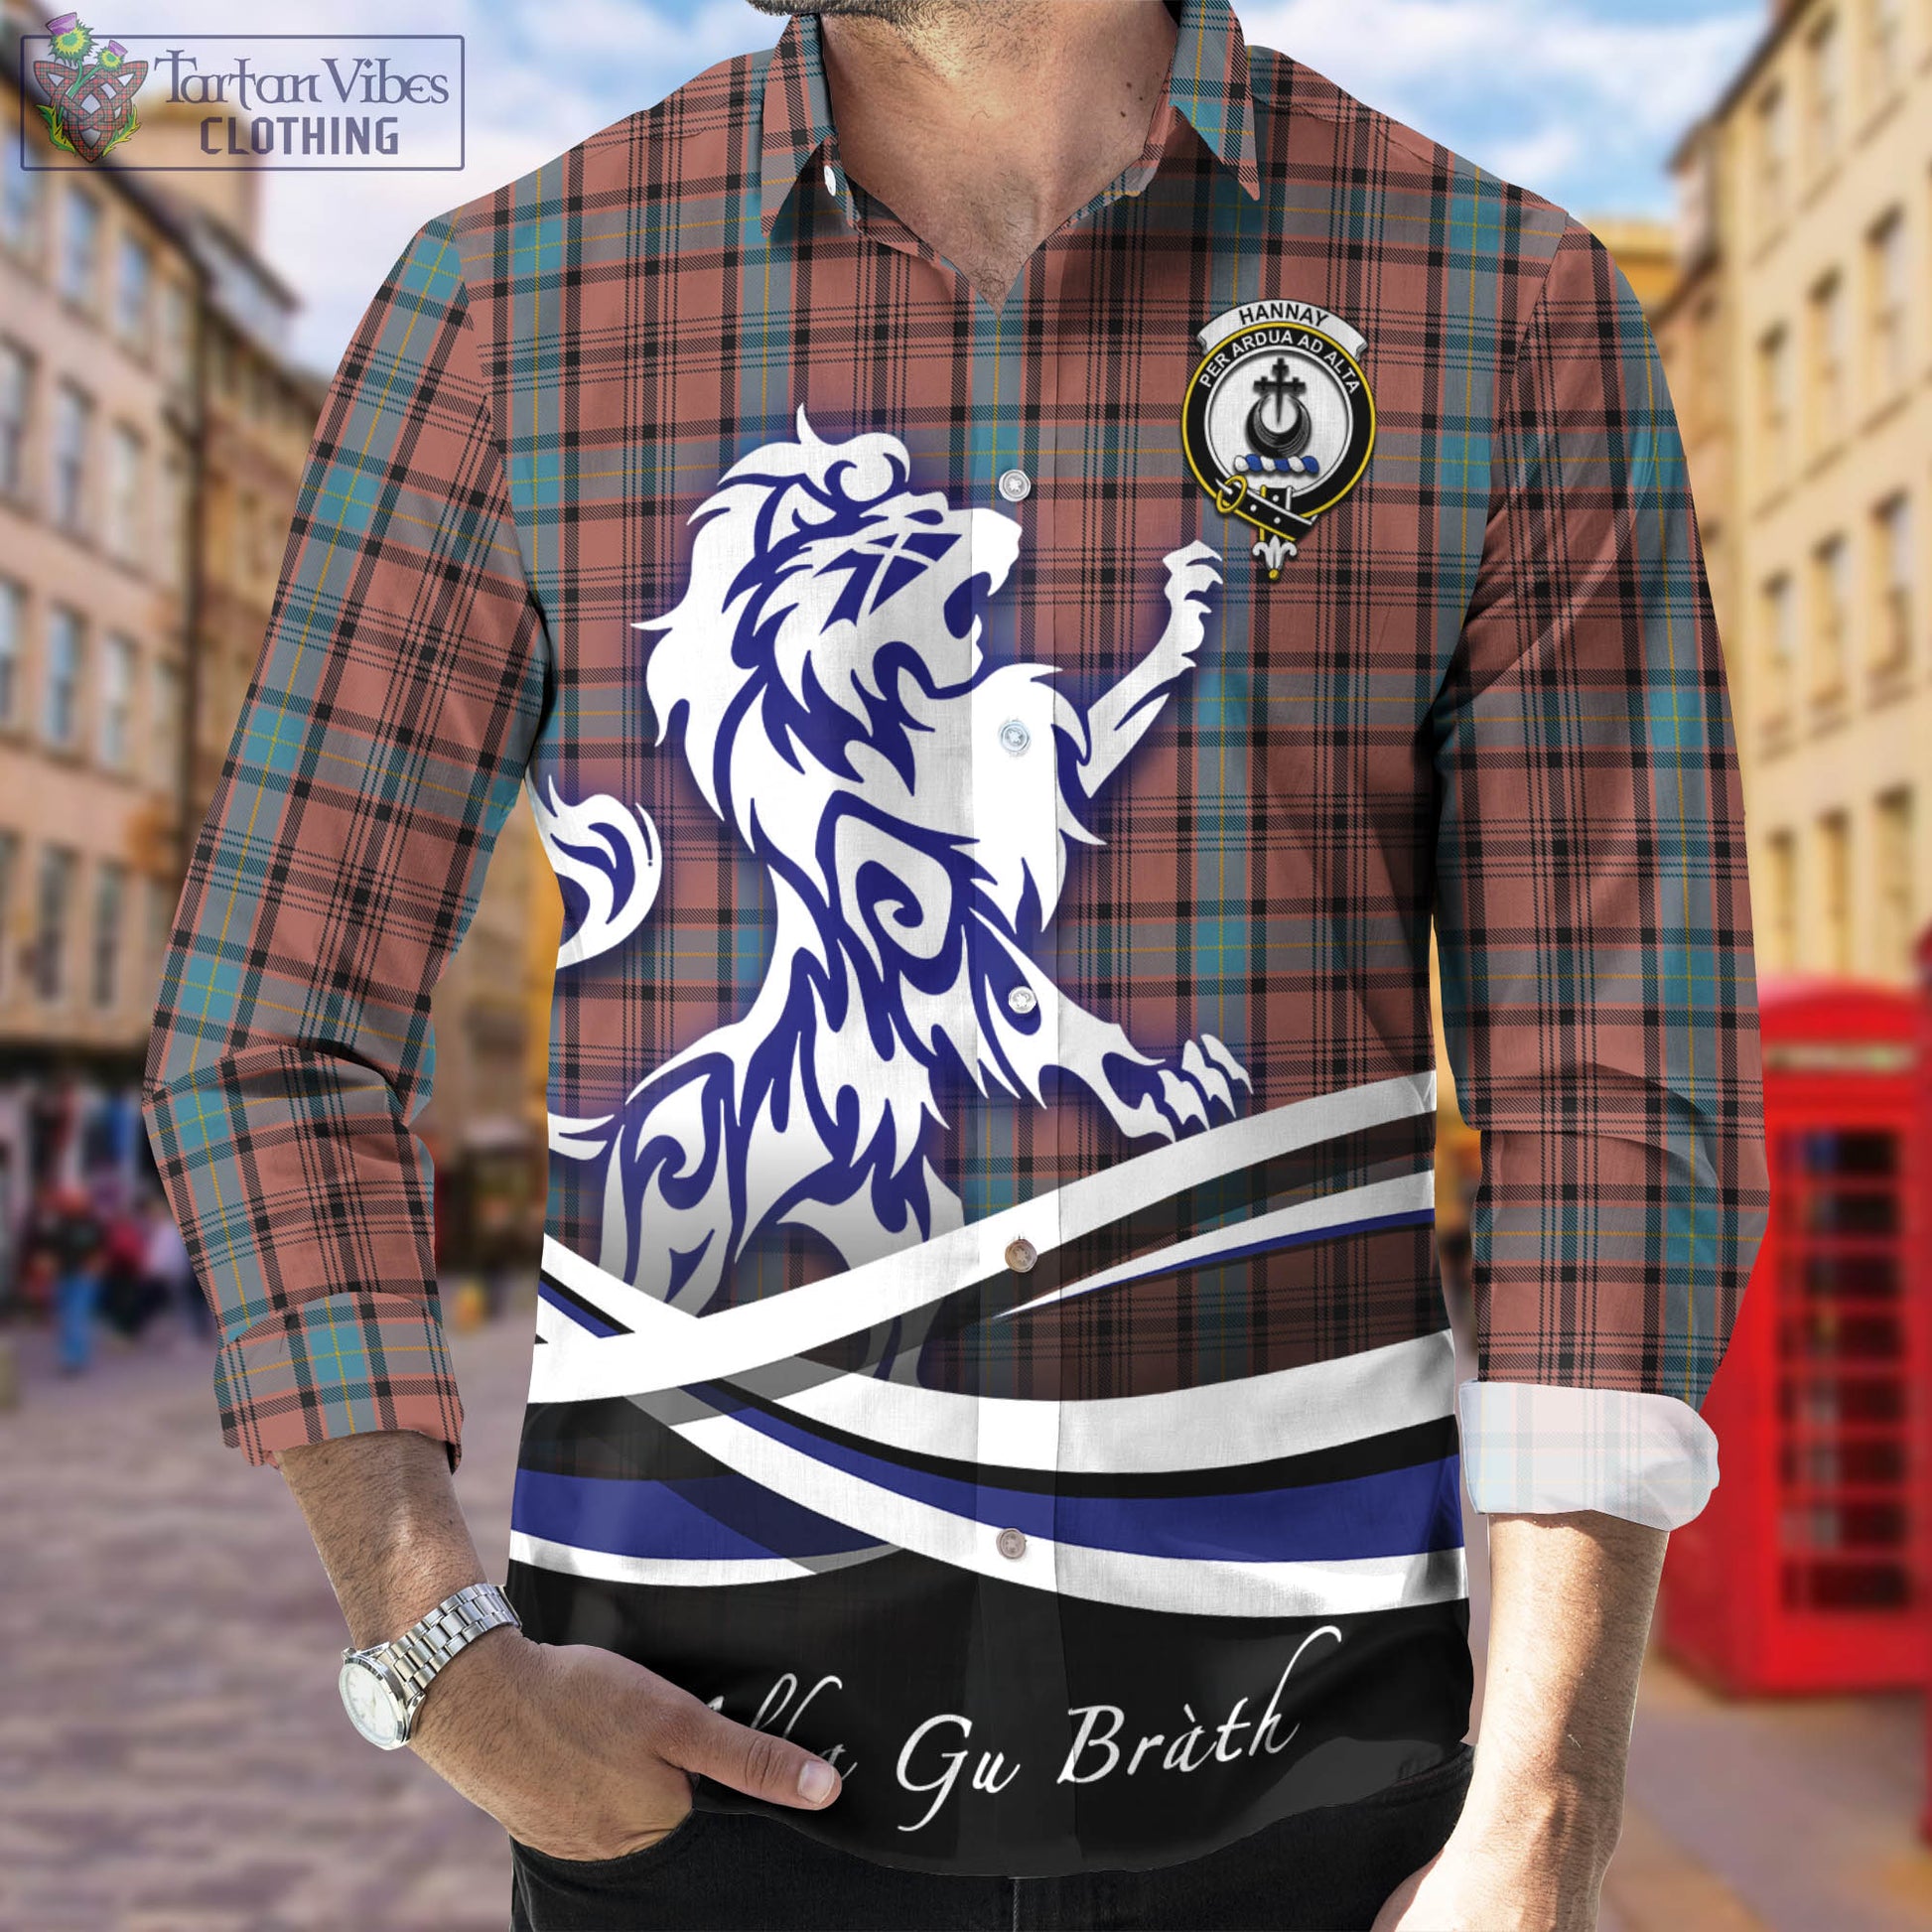 hannay-dress-tartan-long-sleeve-button-up-shirt-with-alba-gu-brath-regal-lion-emblem